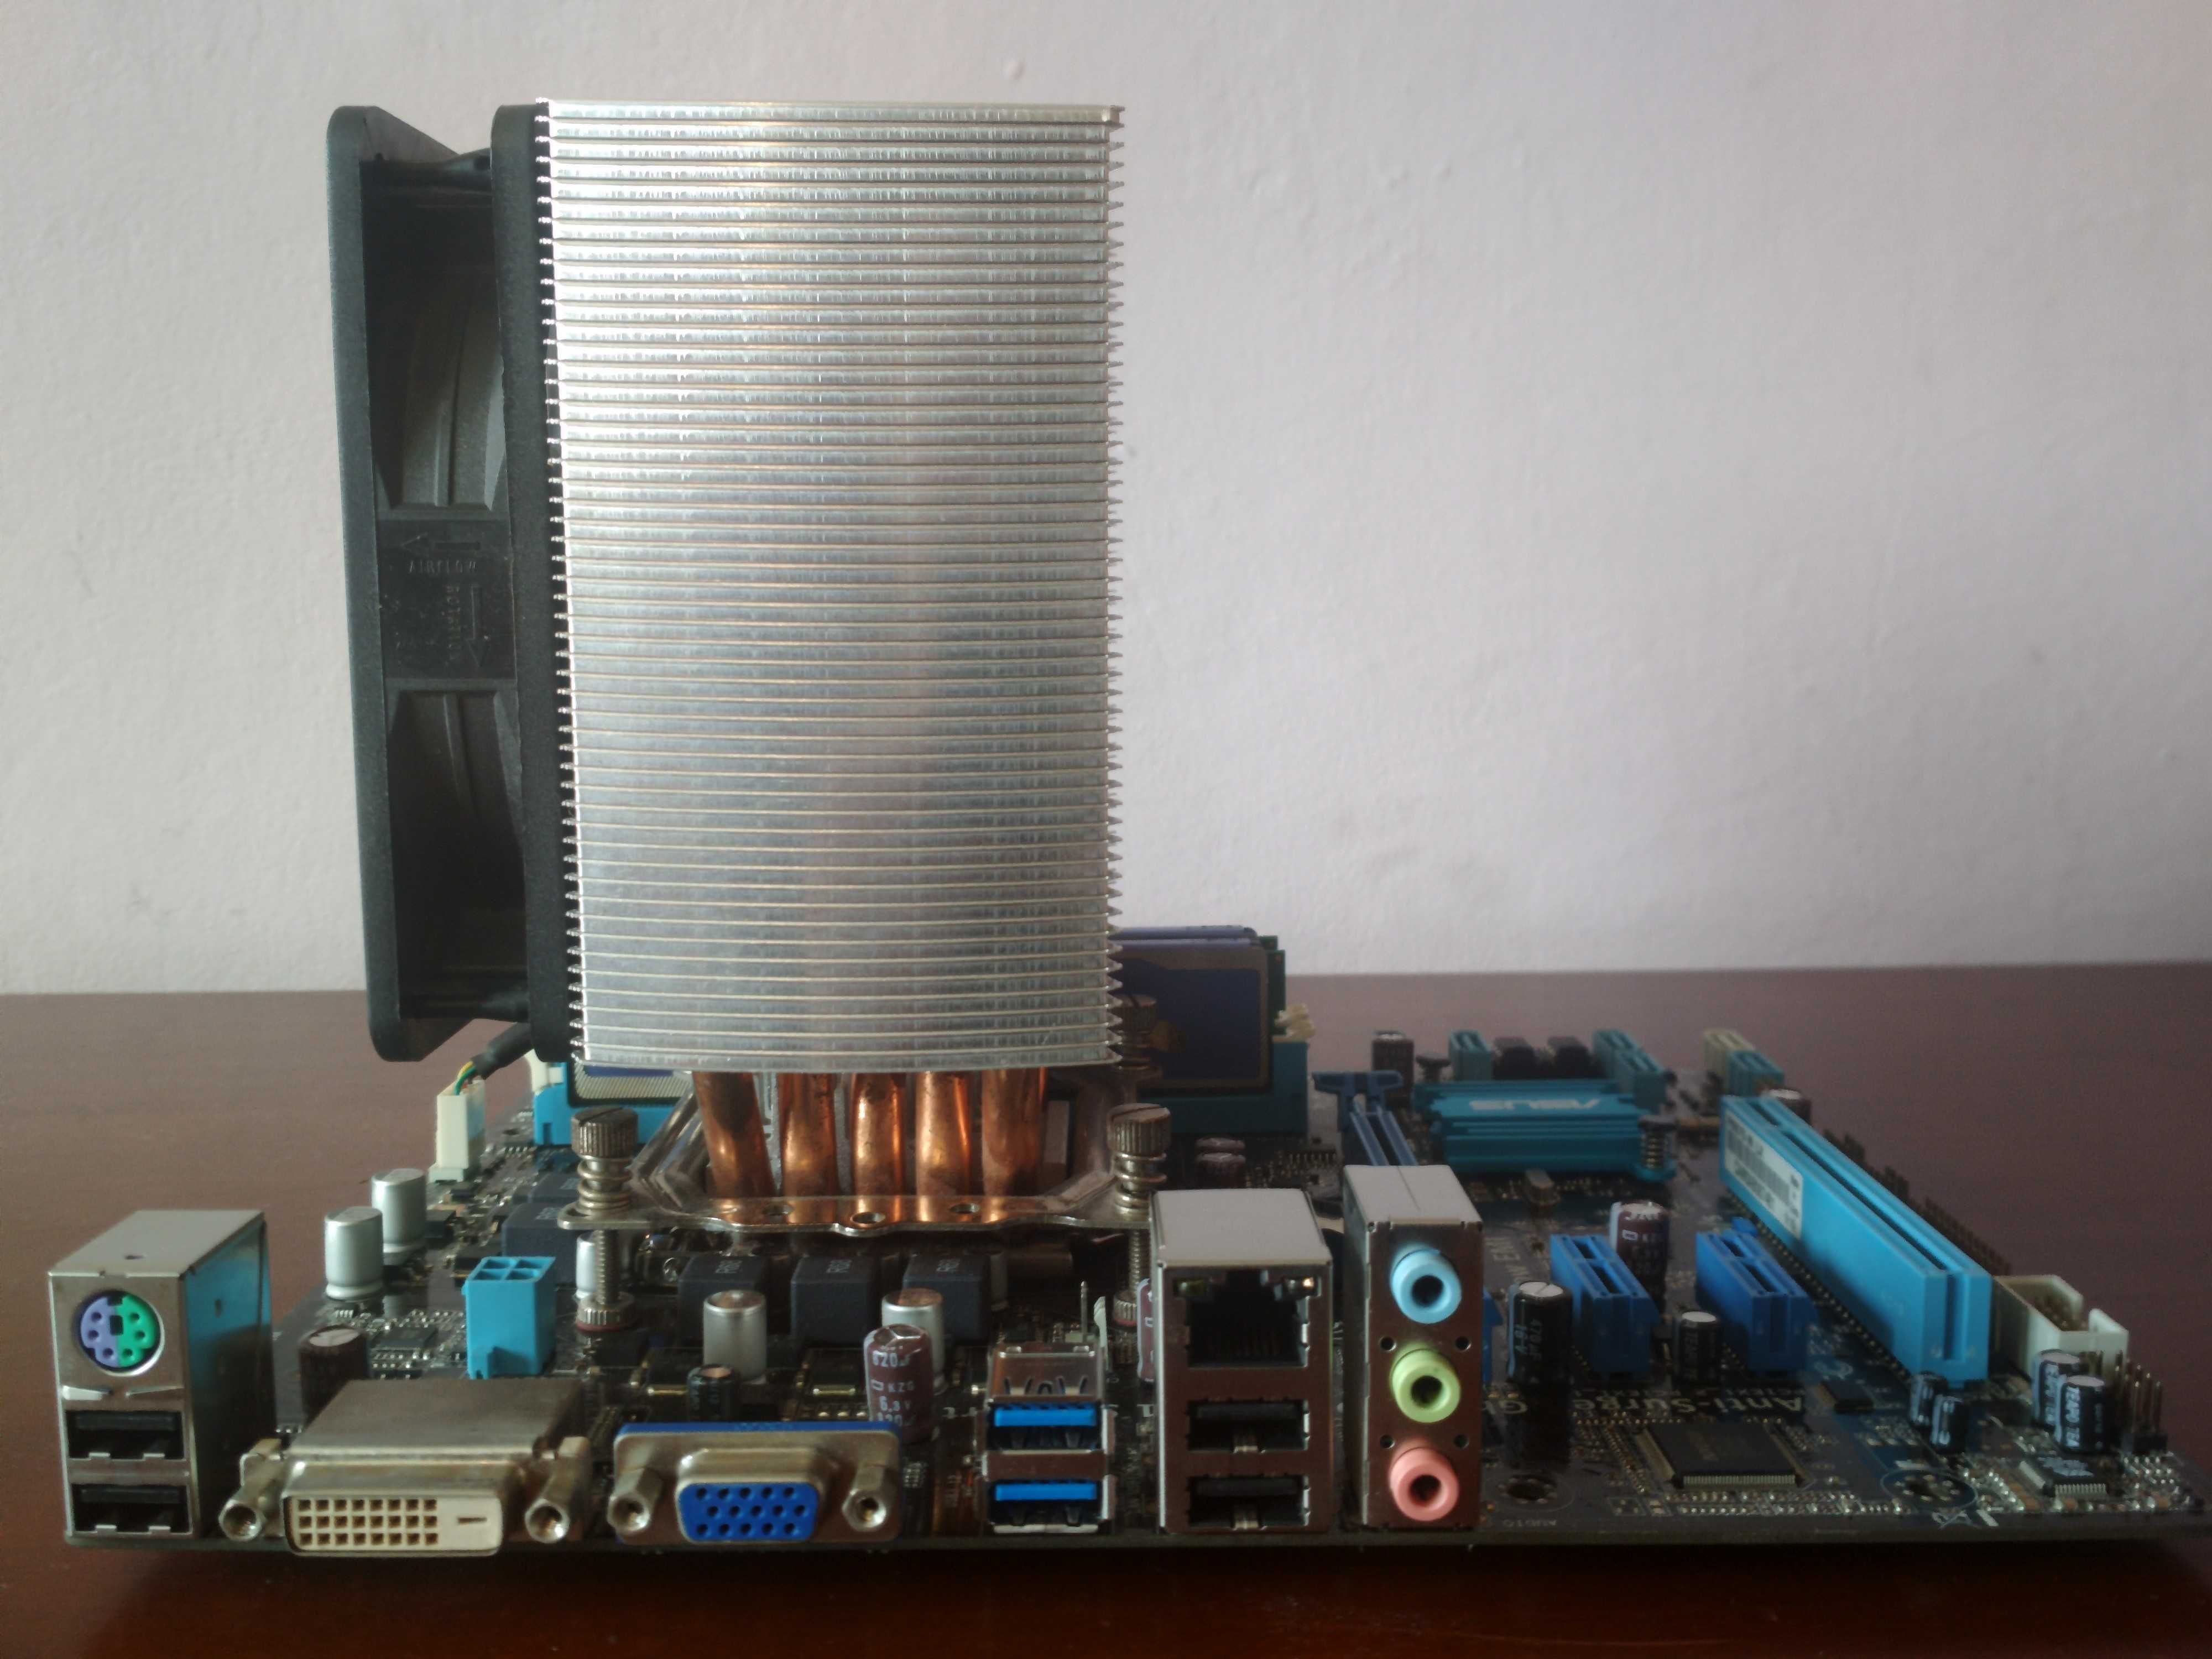 Intel Xeon E3-1230v2 + Asus P8B75-M LX + 16GB RAM (2x8GB) + SPC Fortis